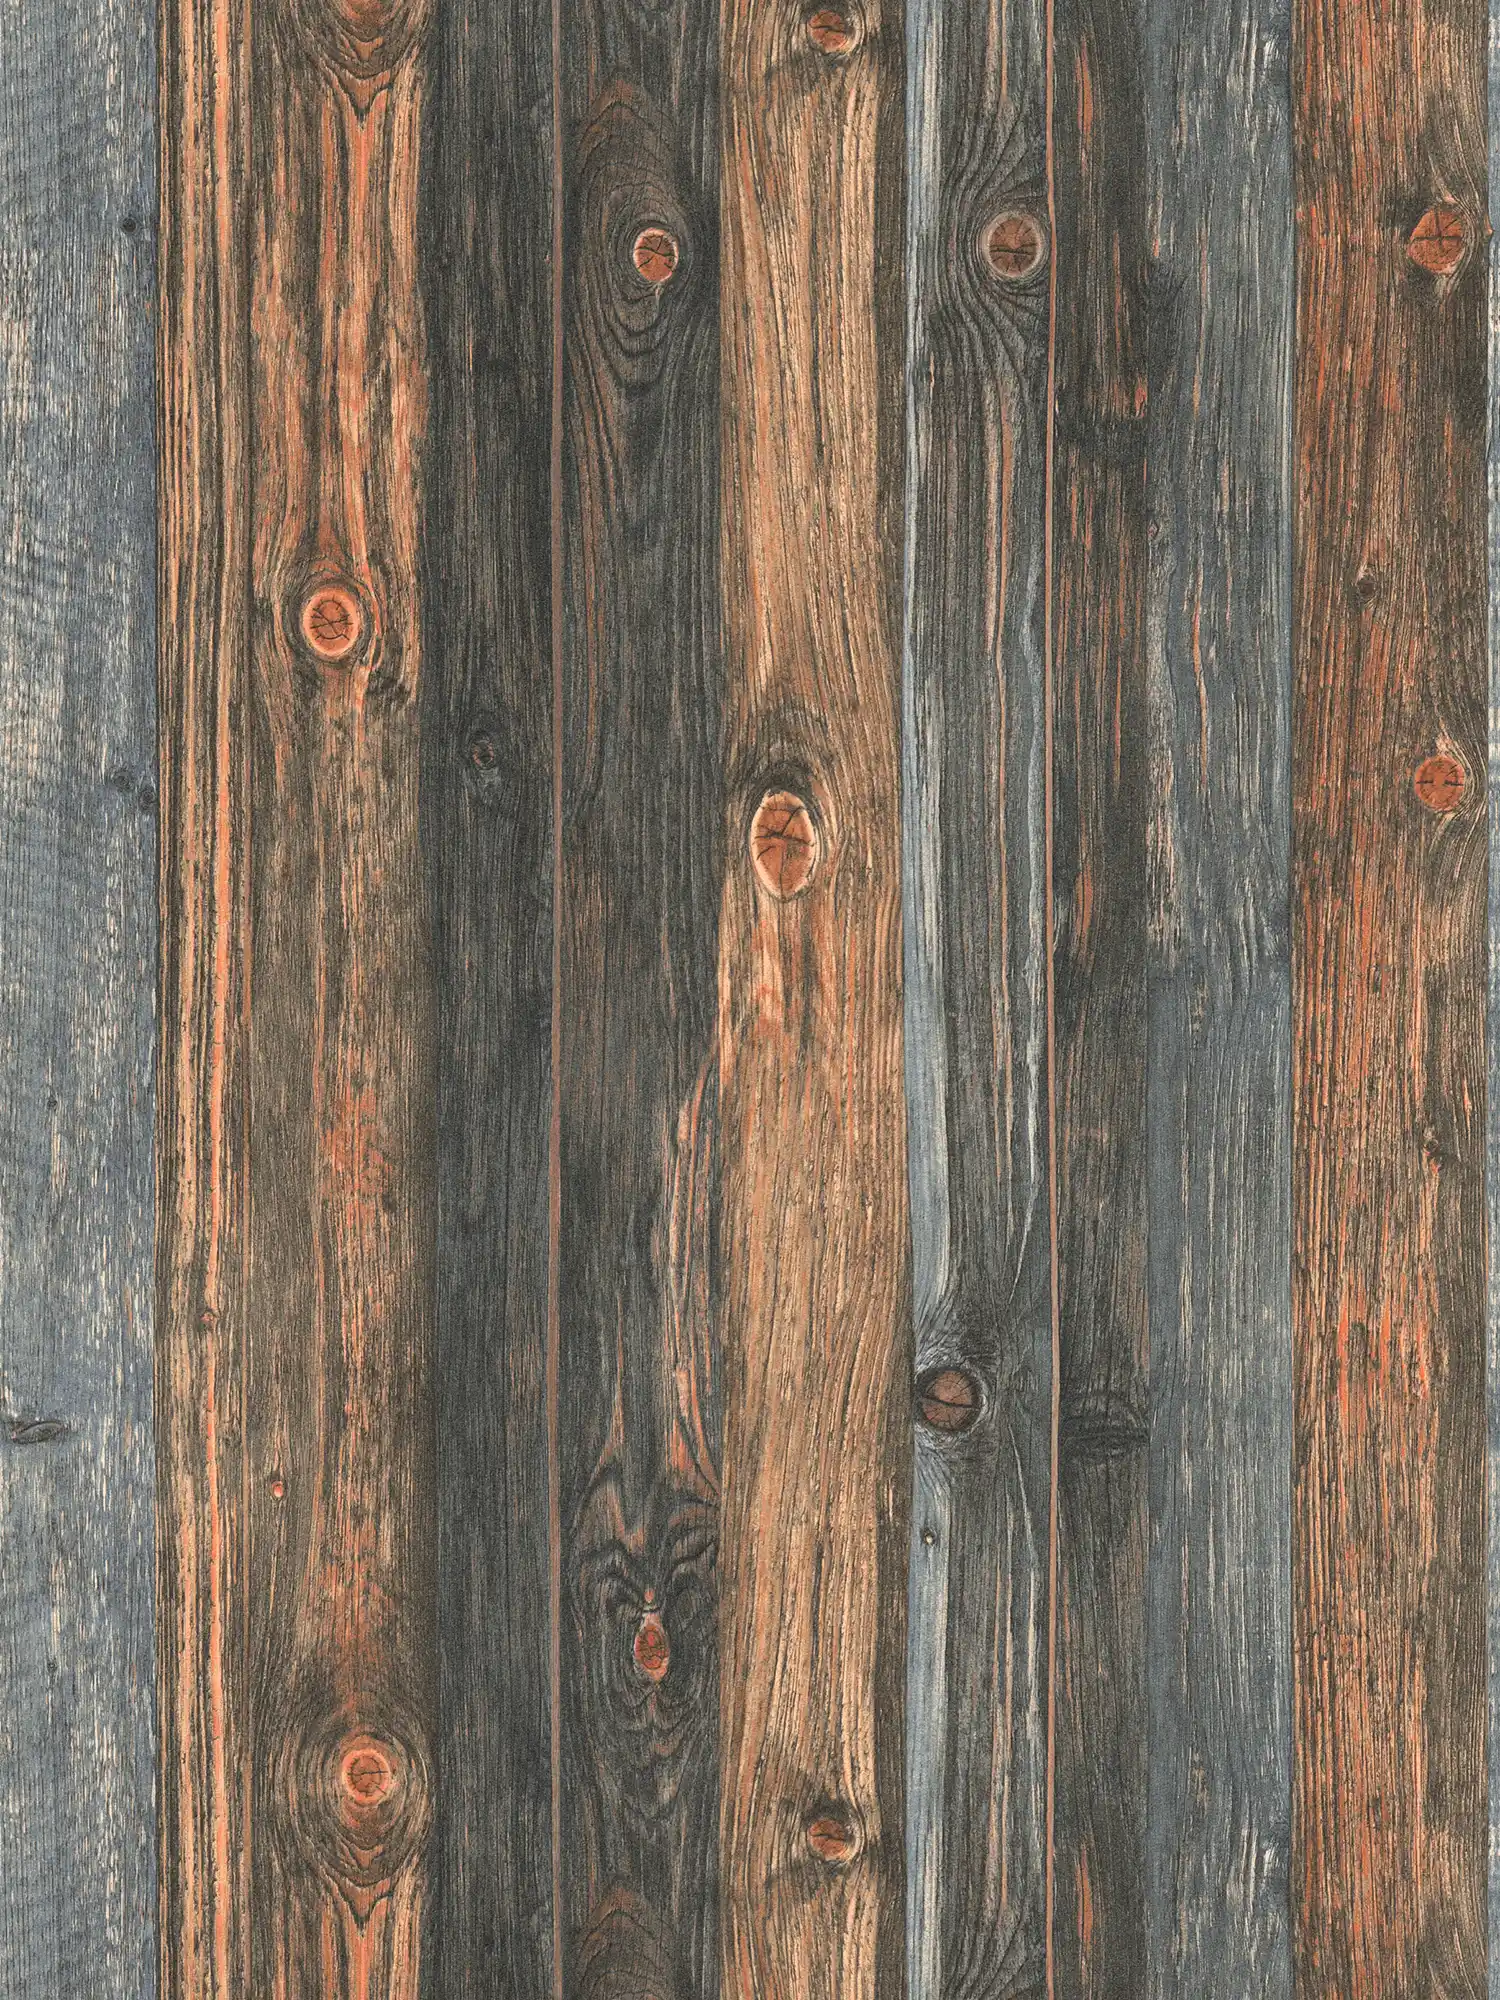 Papel pintado de madera con motivo de tablas, estructura y grano de madera - marrón, gris, beige
